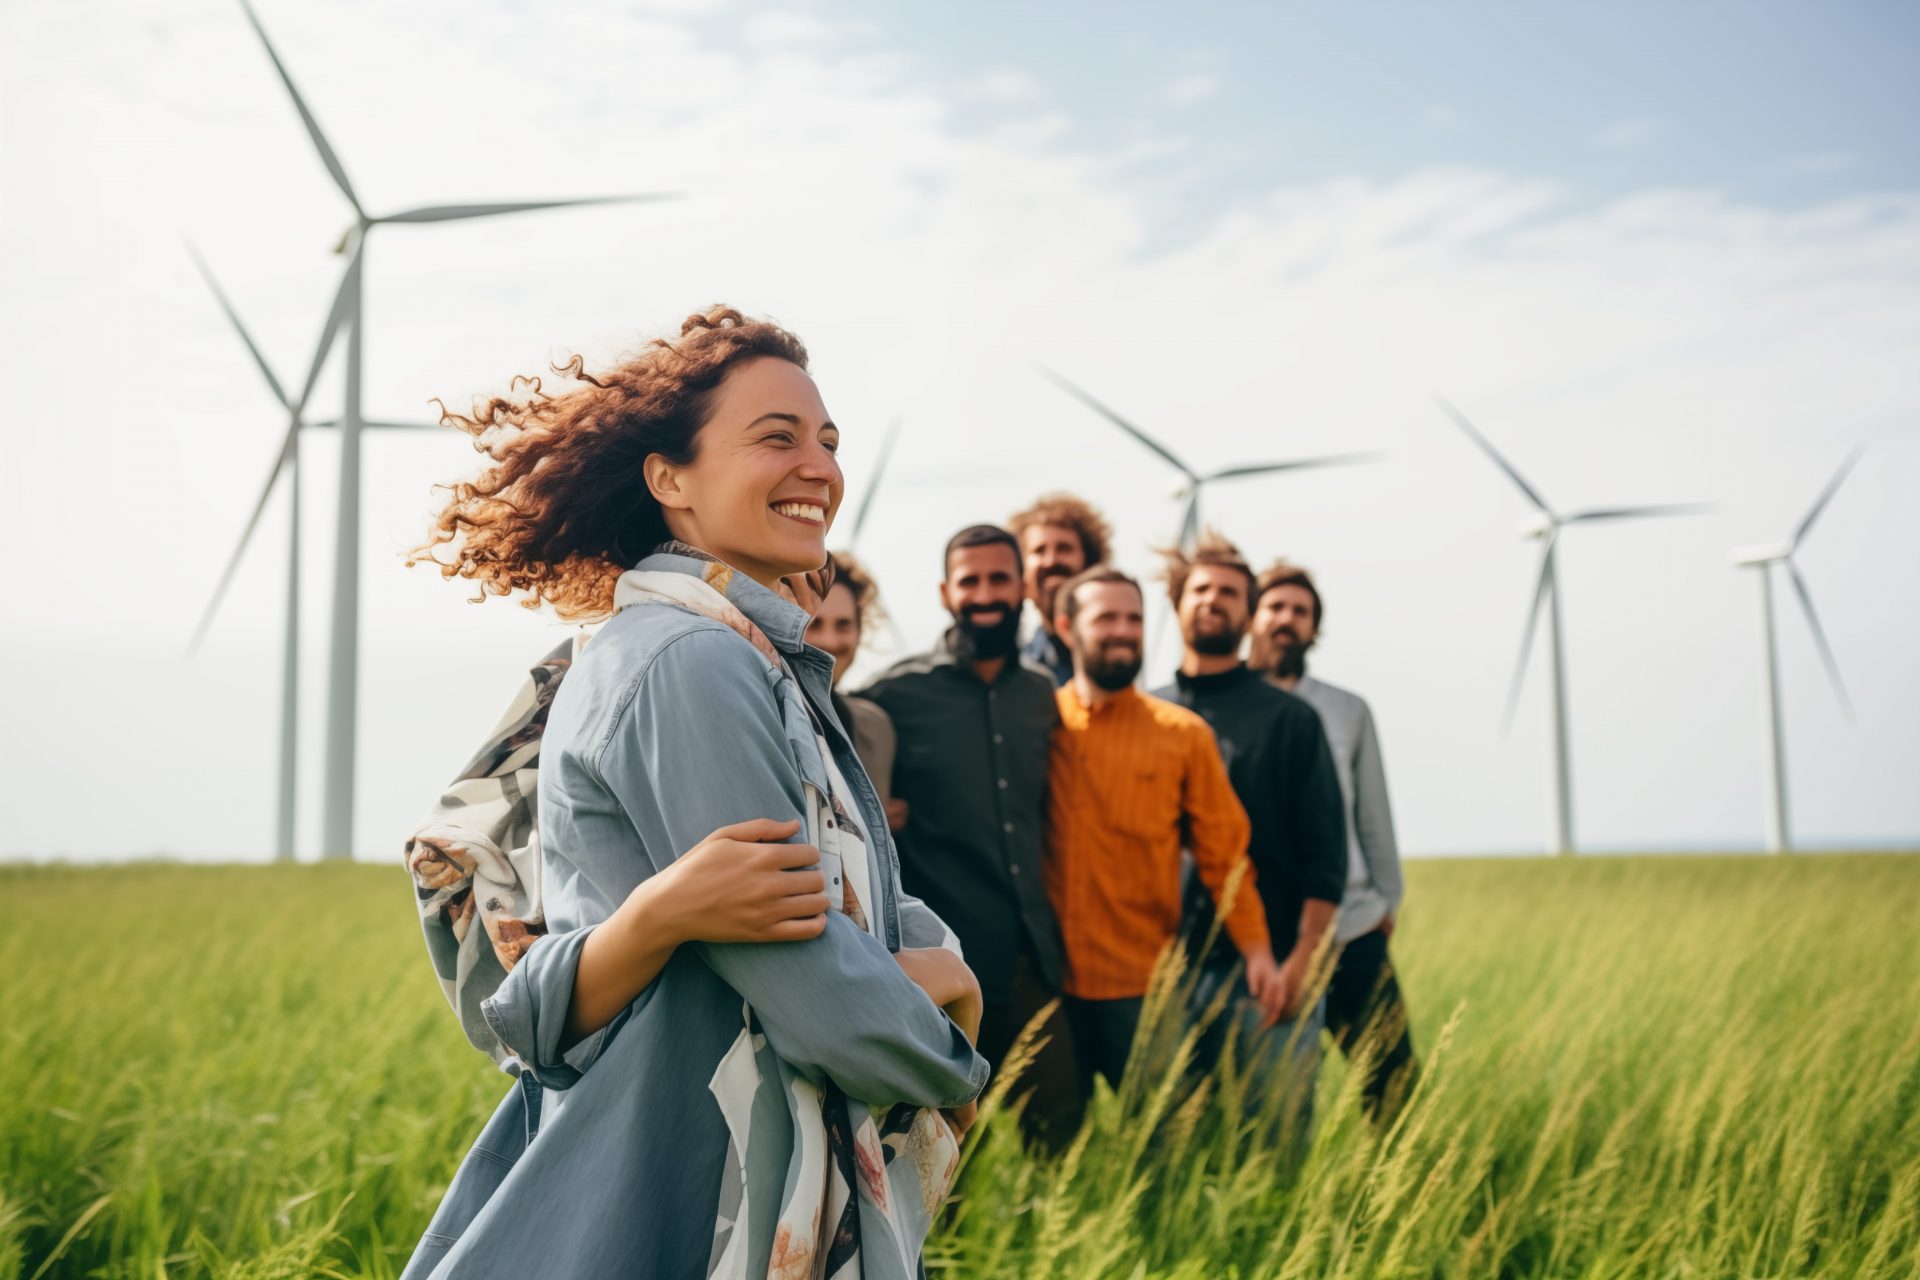 Un groupe de personnes souriantes se tient dans un champ vert, avec des éoliennes en arrière-plan.